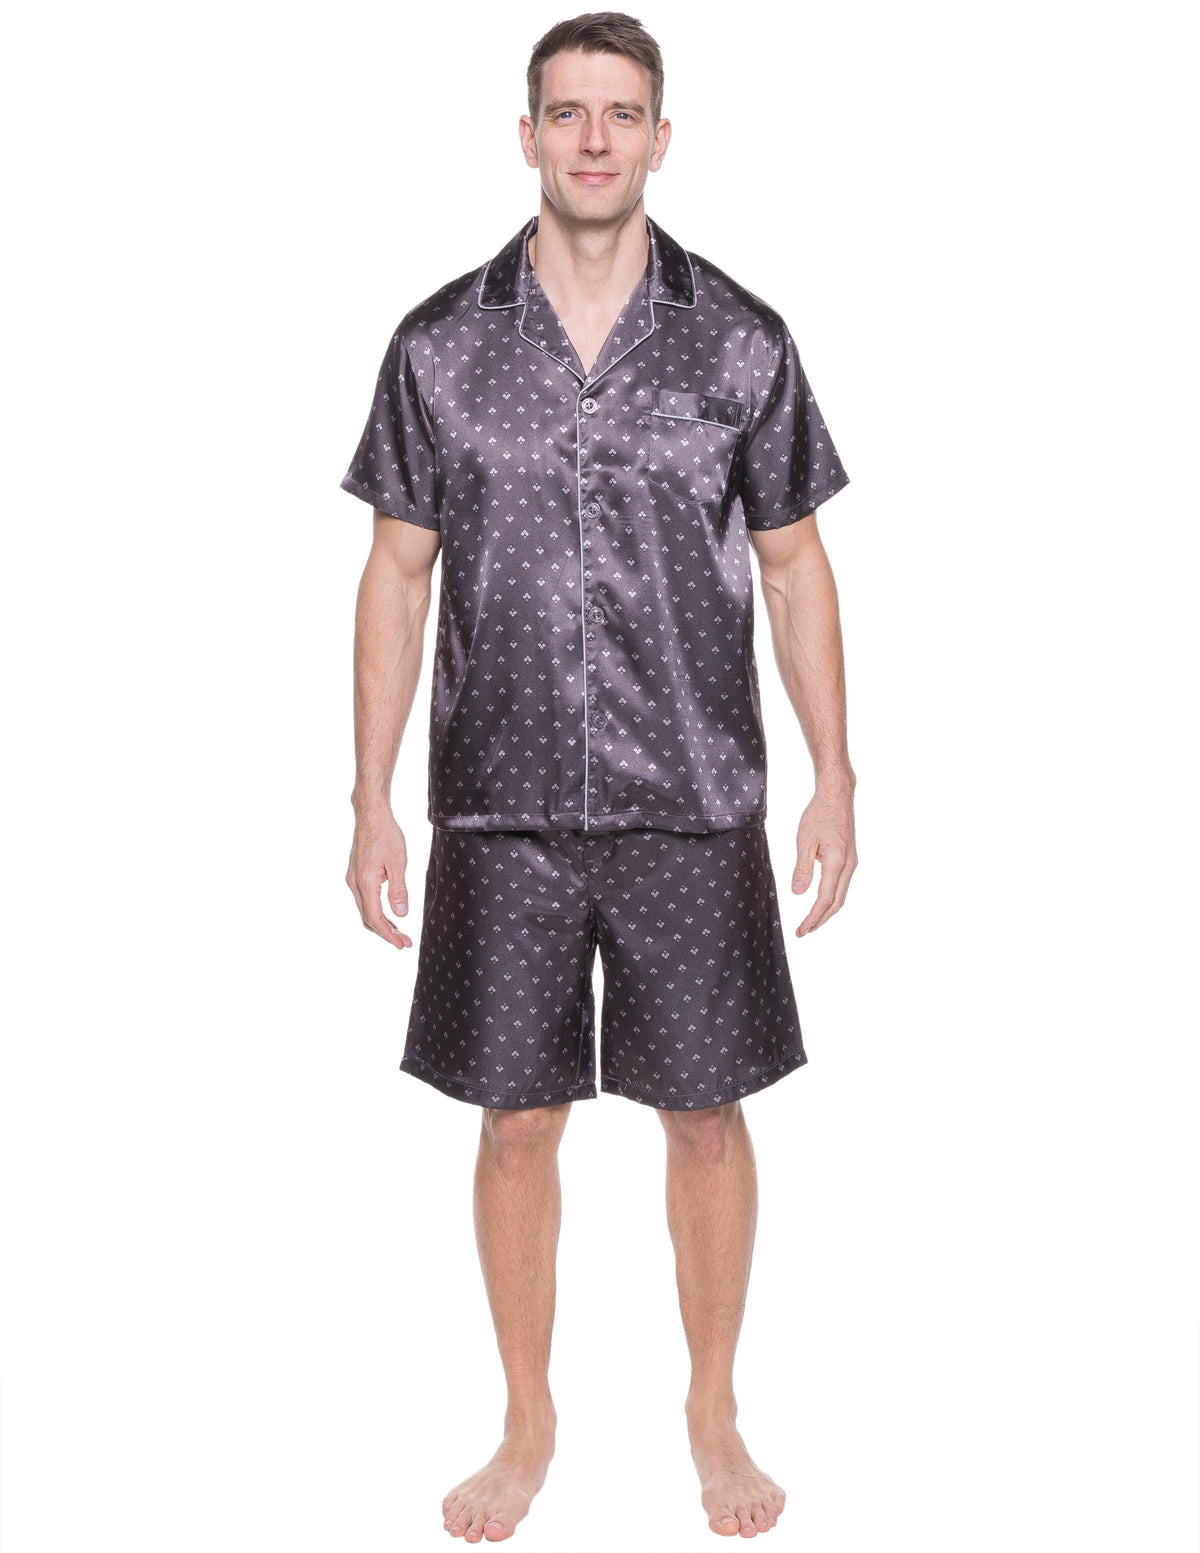 Mens Satin Short Sleepwear/Pajama Set - Diamond Squares Dark Grey